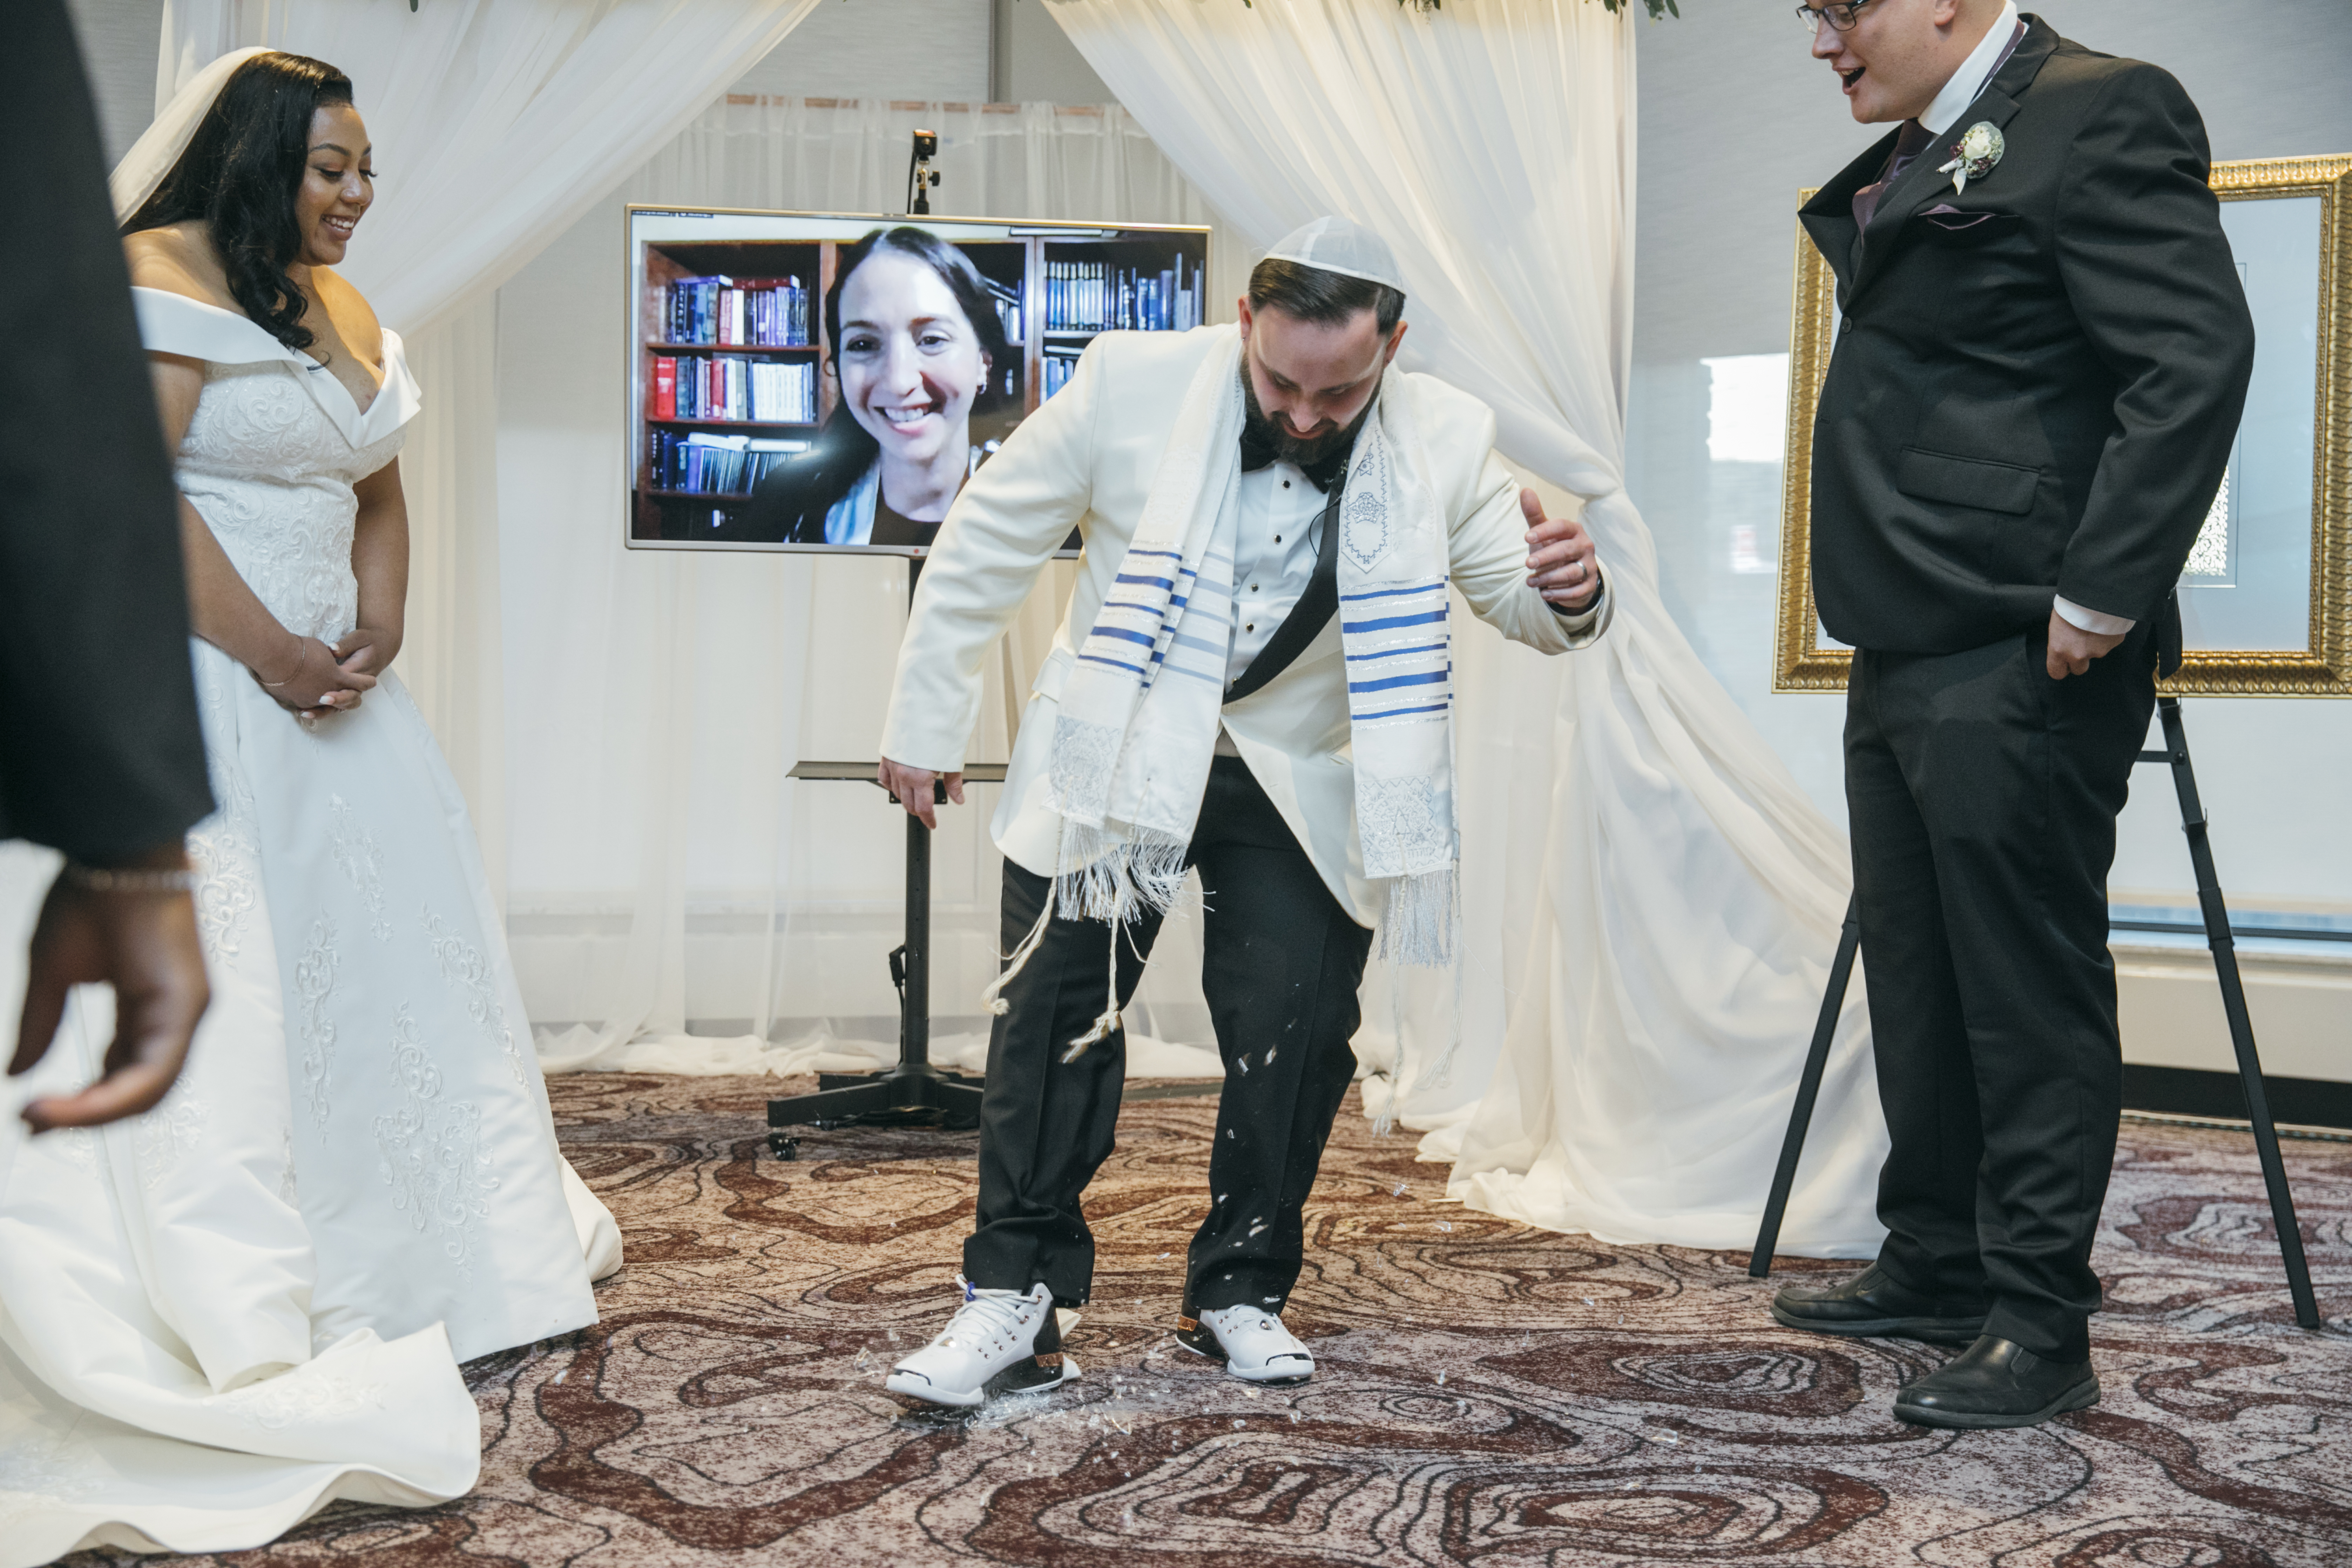 Virtual Rabbi and glass stomping at wedding